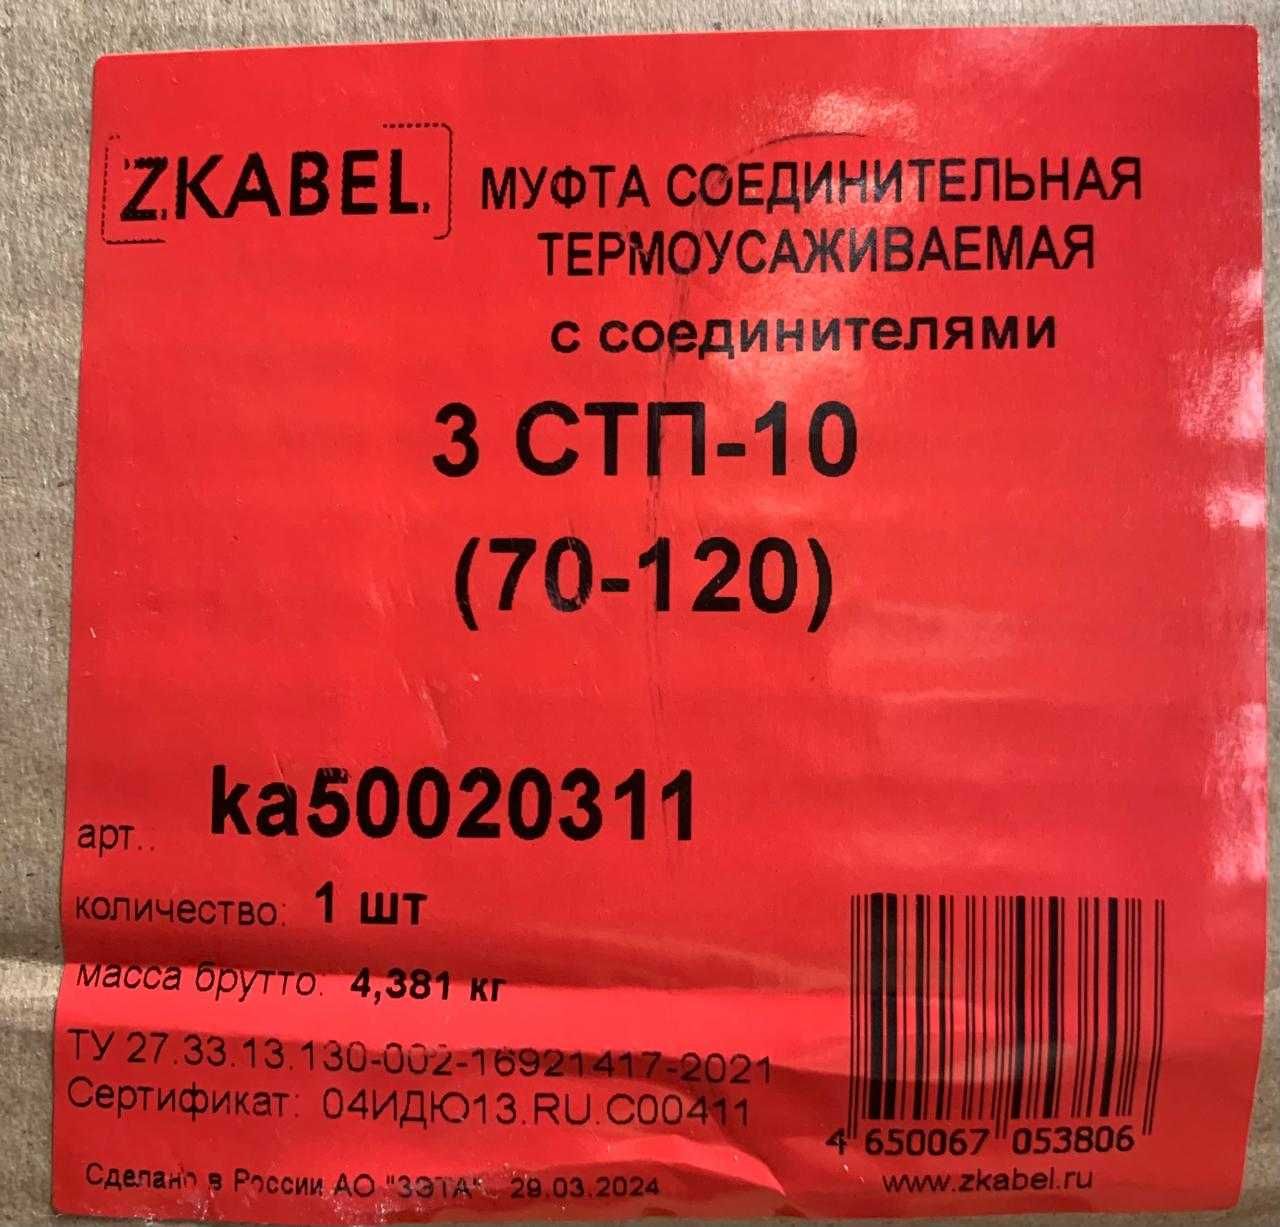 Муфты термоусаживаемые, купить муфты в Алматы. Заливные муфты МКС